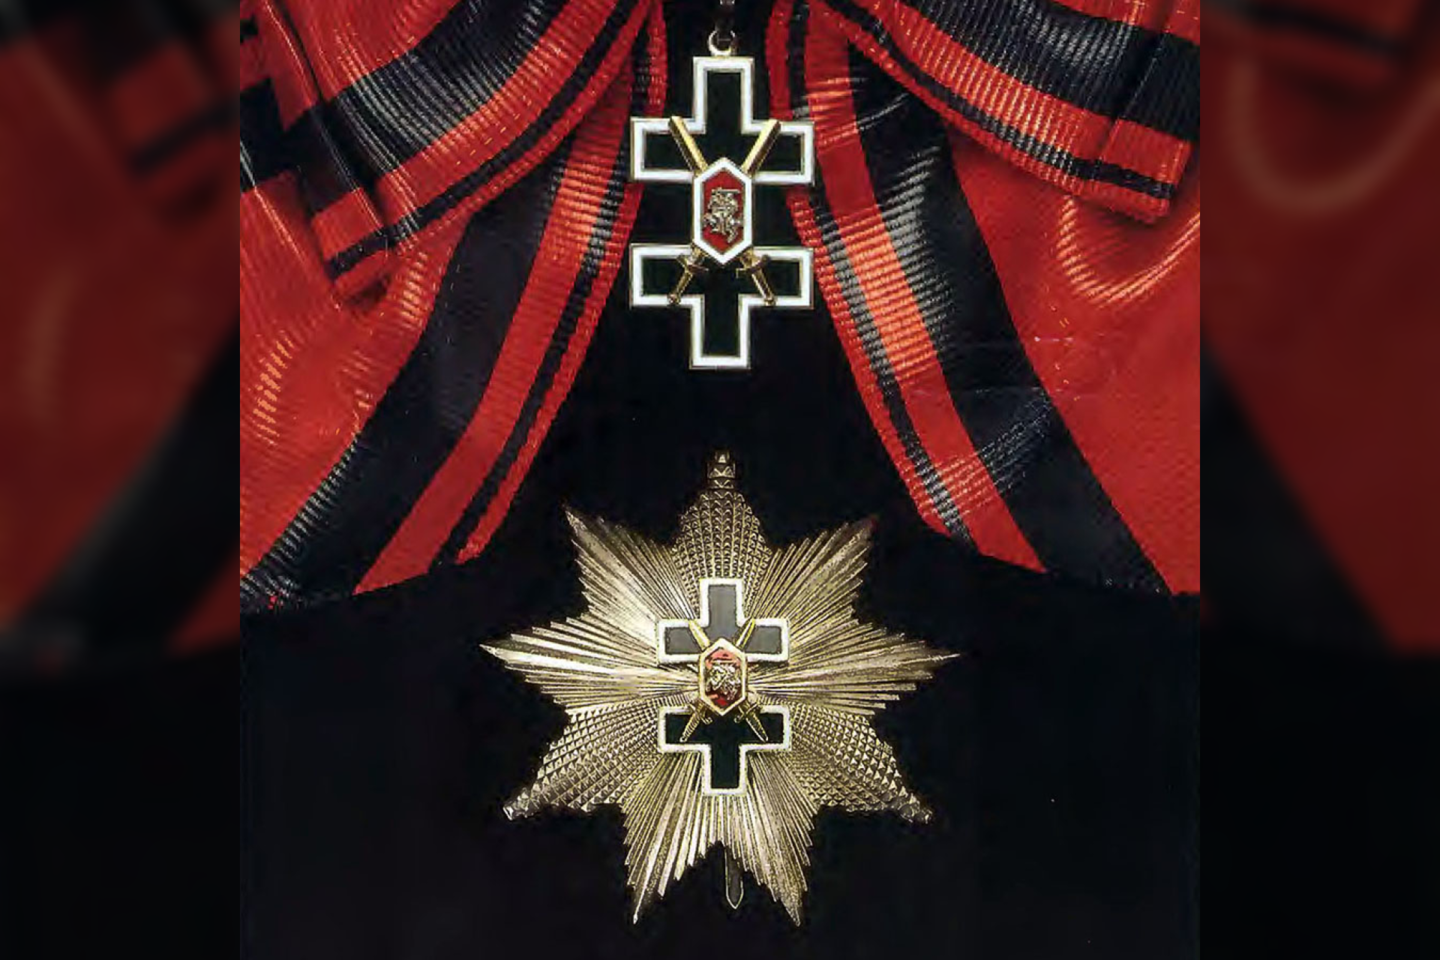 1991 m. atkurtas Lietuvos Respublikos apdovanojimas Vyčio Kryžiaus ordinas. Juo tos pačios dienos Aukščiausiosios Tarybos Prezidiumo nutarimu pirmieji apdovanoti žuvusieji už laisvę Sausio 13‑ąją. 1919 m. liepos mėn. įsteigtas ordinas „Už Tėvynę“ 1920 metais buvo pavadintas Vyties Kryžiumi, 1927–1930 metais teiktas kaip Vyties Kryžiaus ordinas.